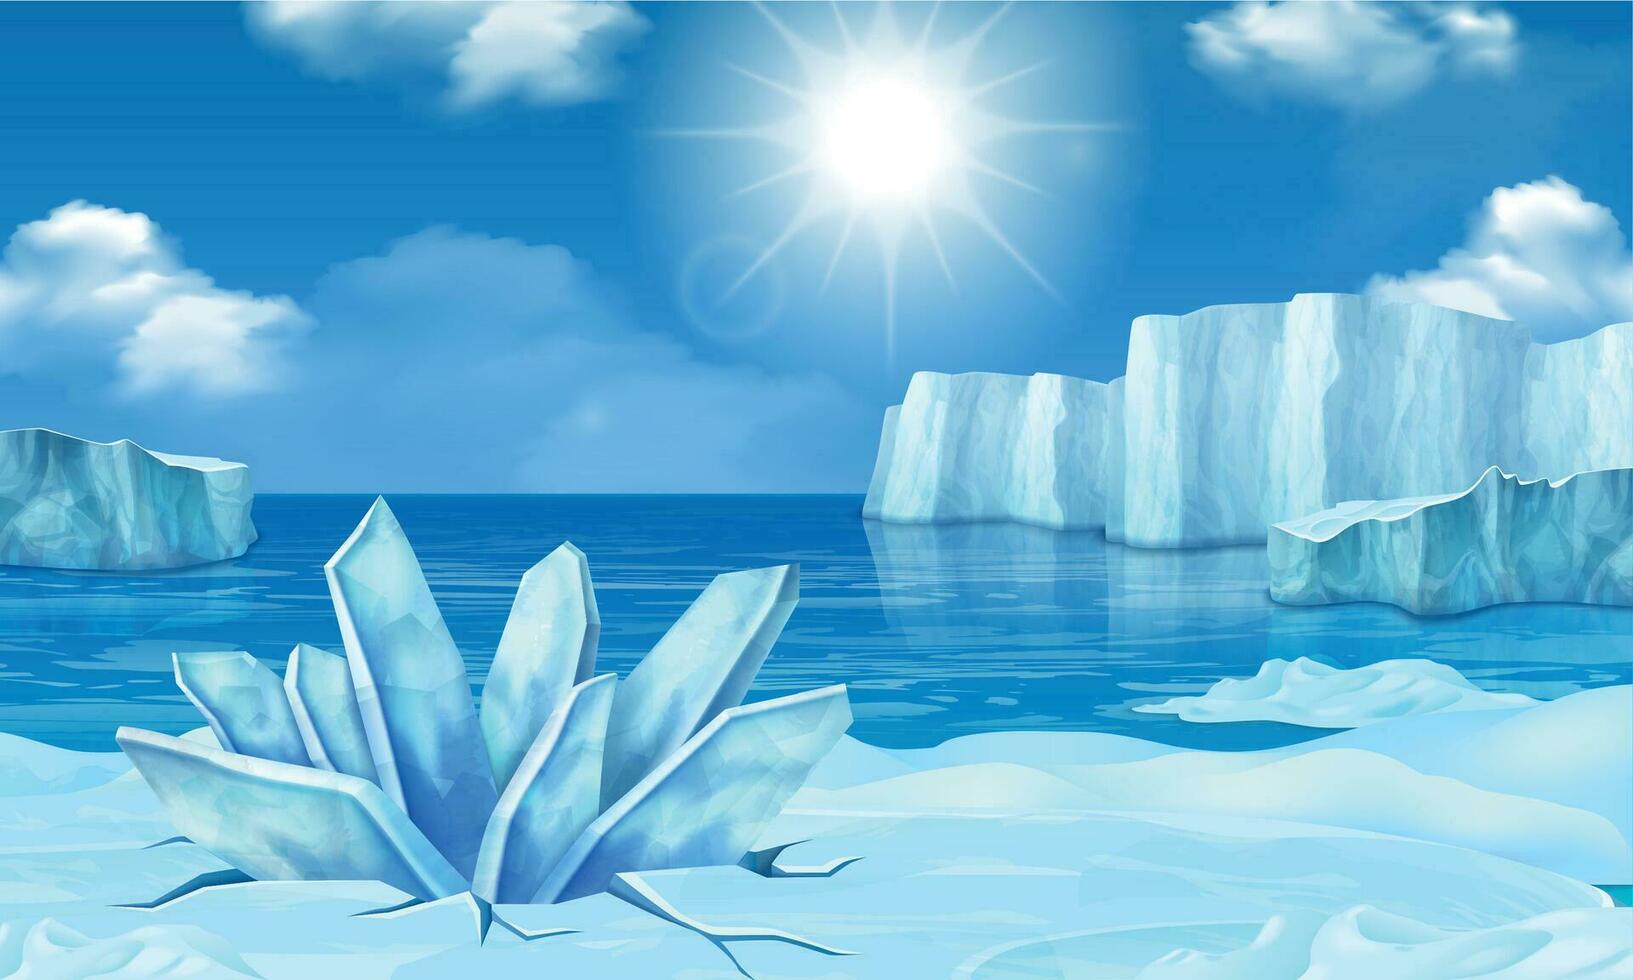 iceberg ghiacciaio realistico vettore